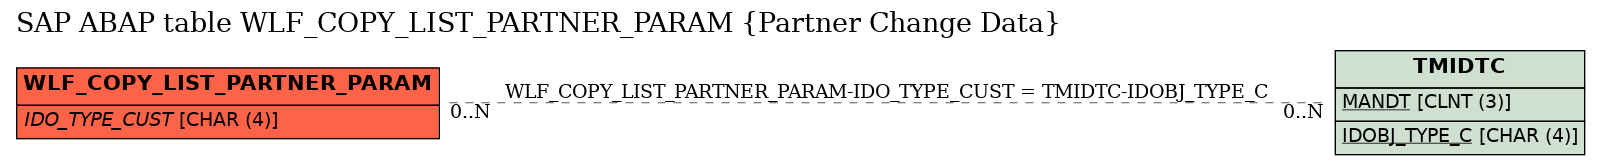 E-R Diagram for table WLF_COPY_LIST_PARTNER_PARAM (Partner Change Data)